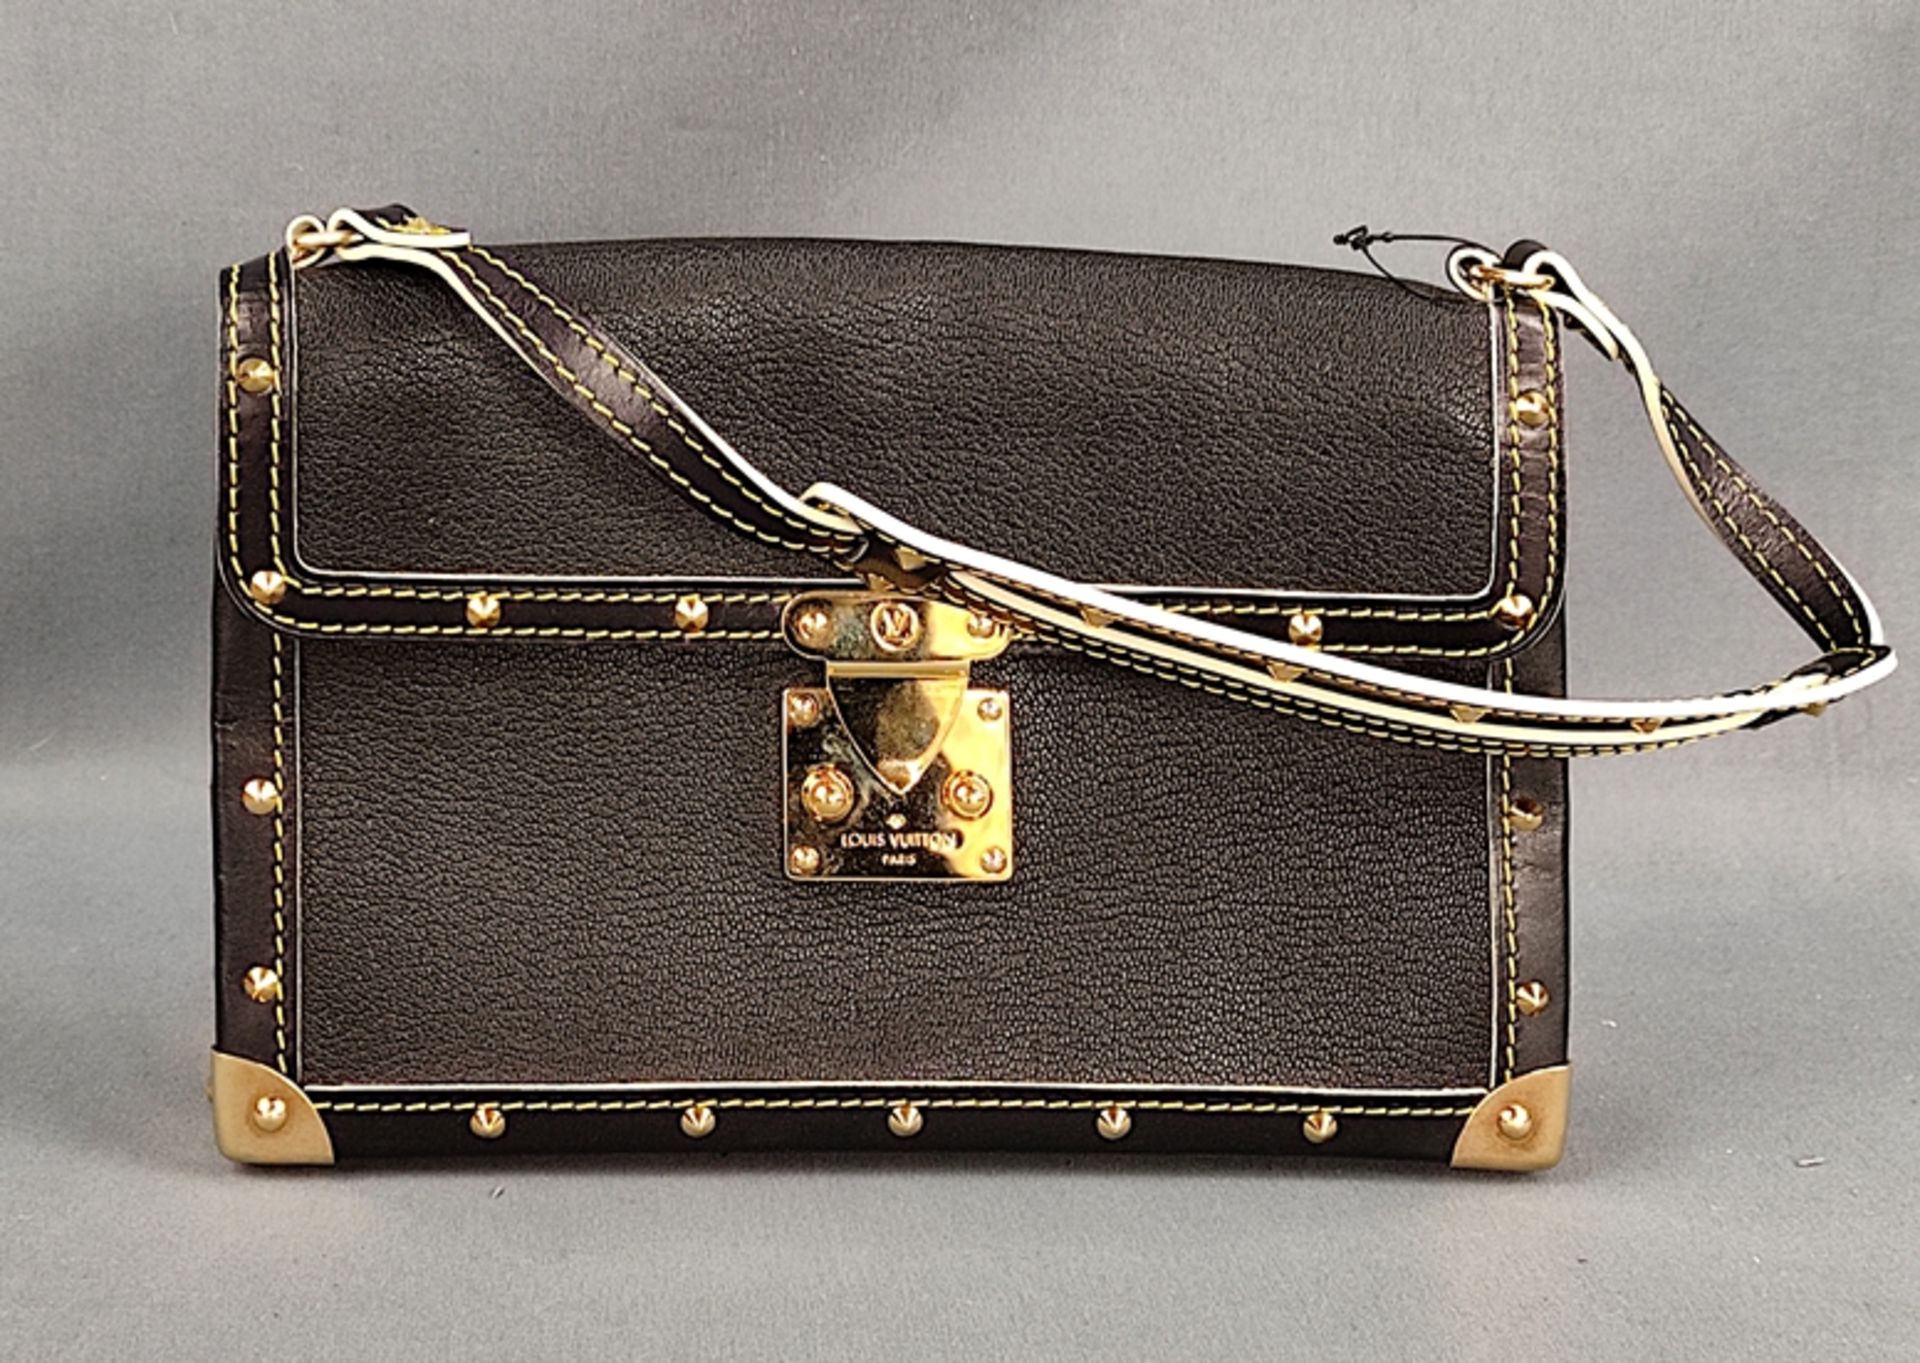 Handtasche, Louis Vuitton, "l'Aimable", schwarzes Leder, 14,5x22x5cm, in Dustbag, in sehr gutem Zus